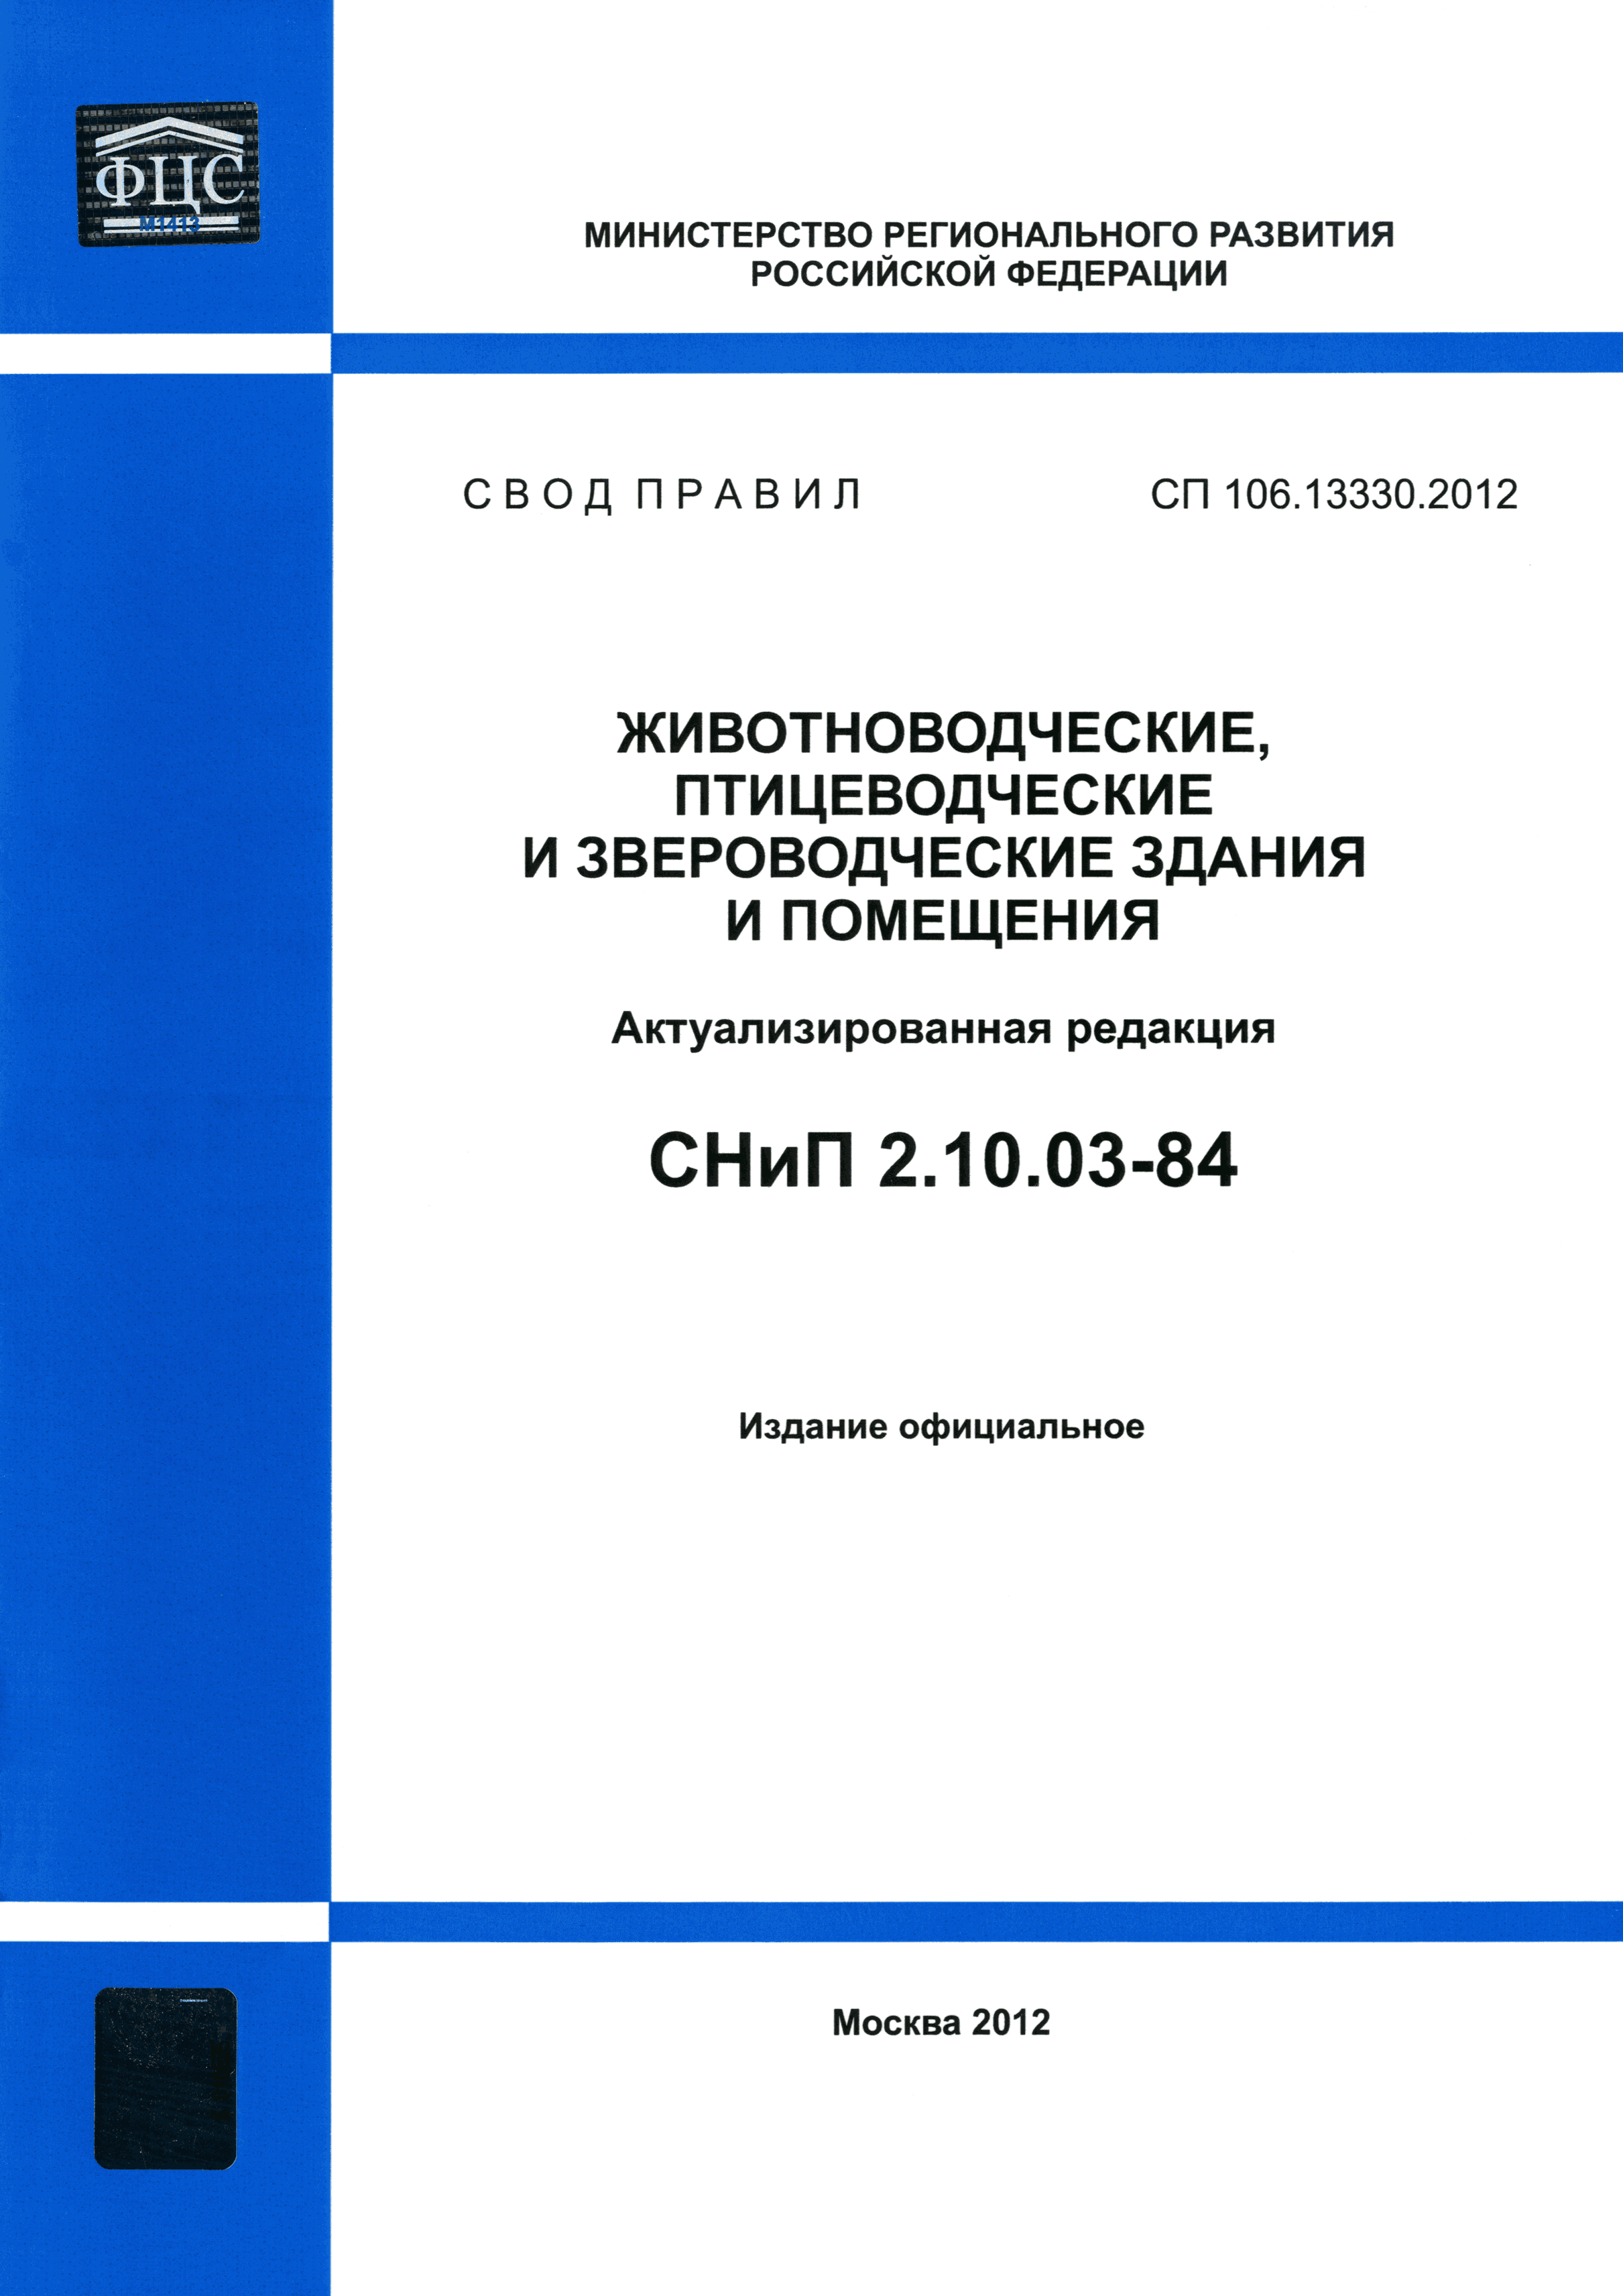 СП 106.13330.2012